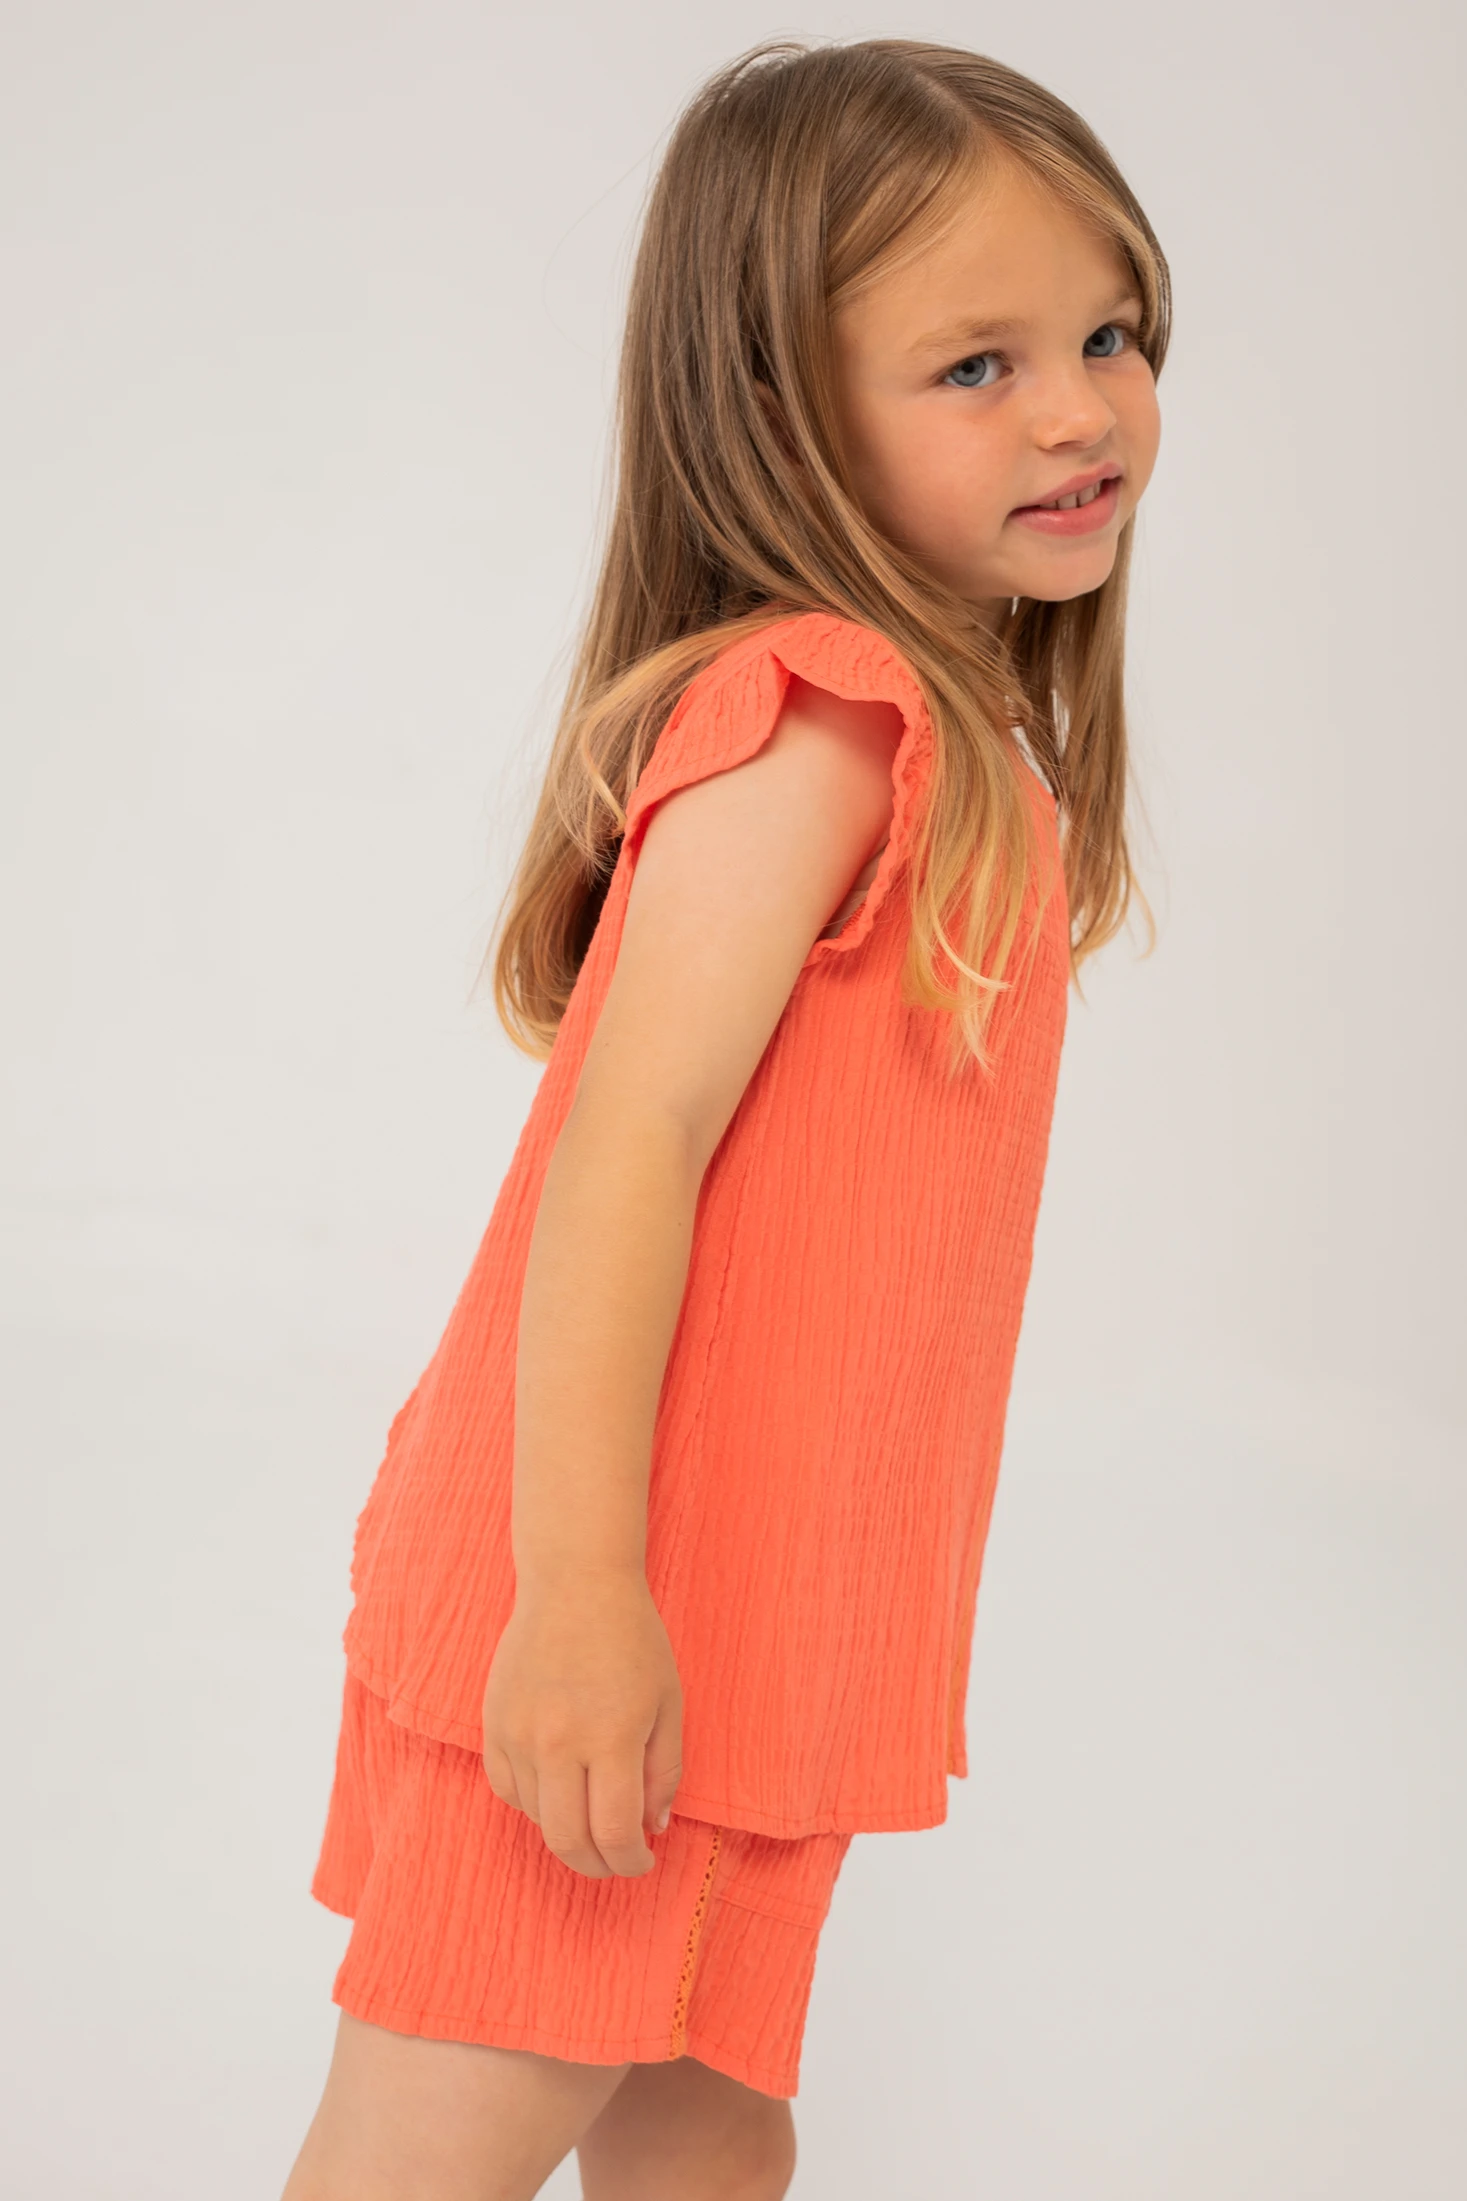 Blusa tejido niña, diseño naranja